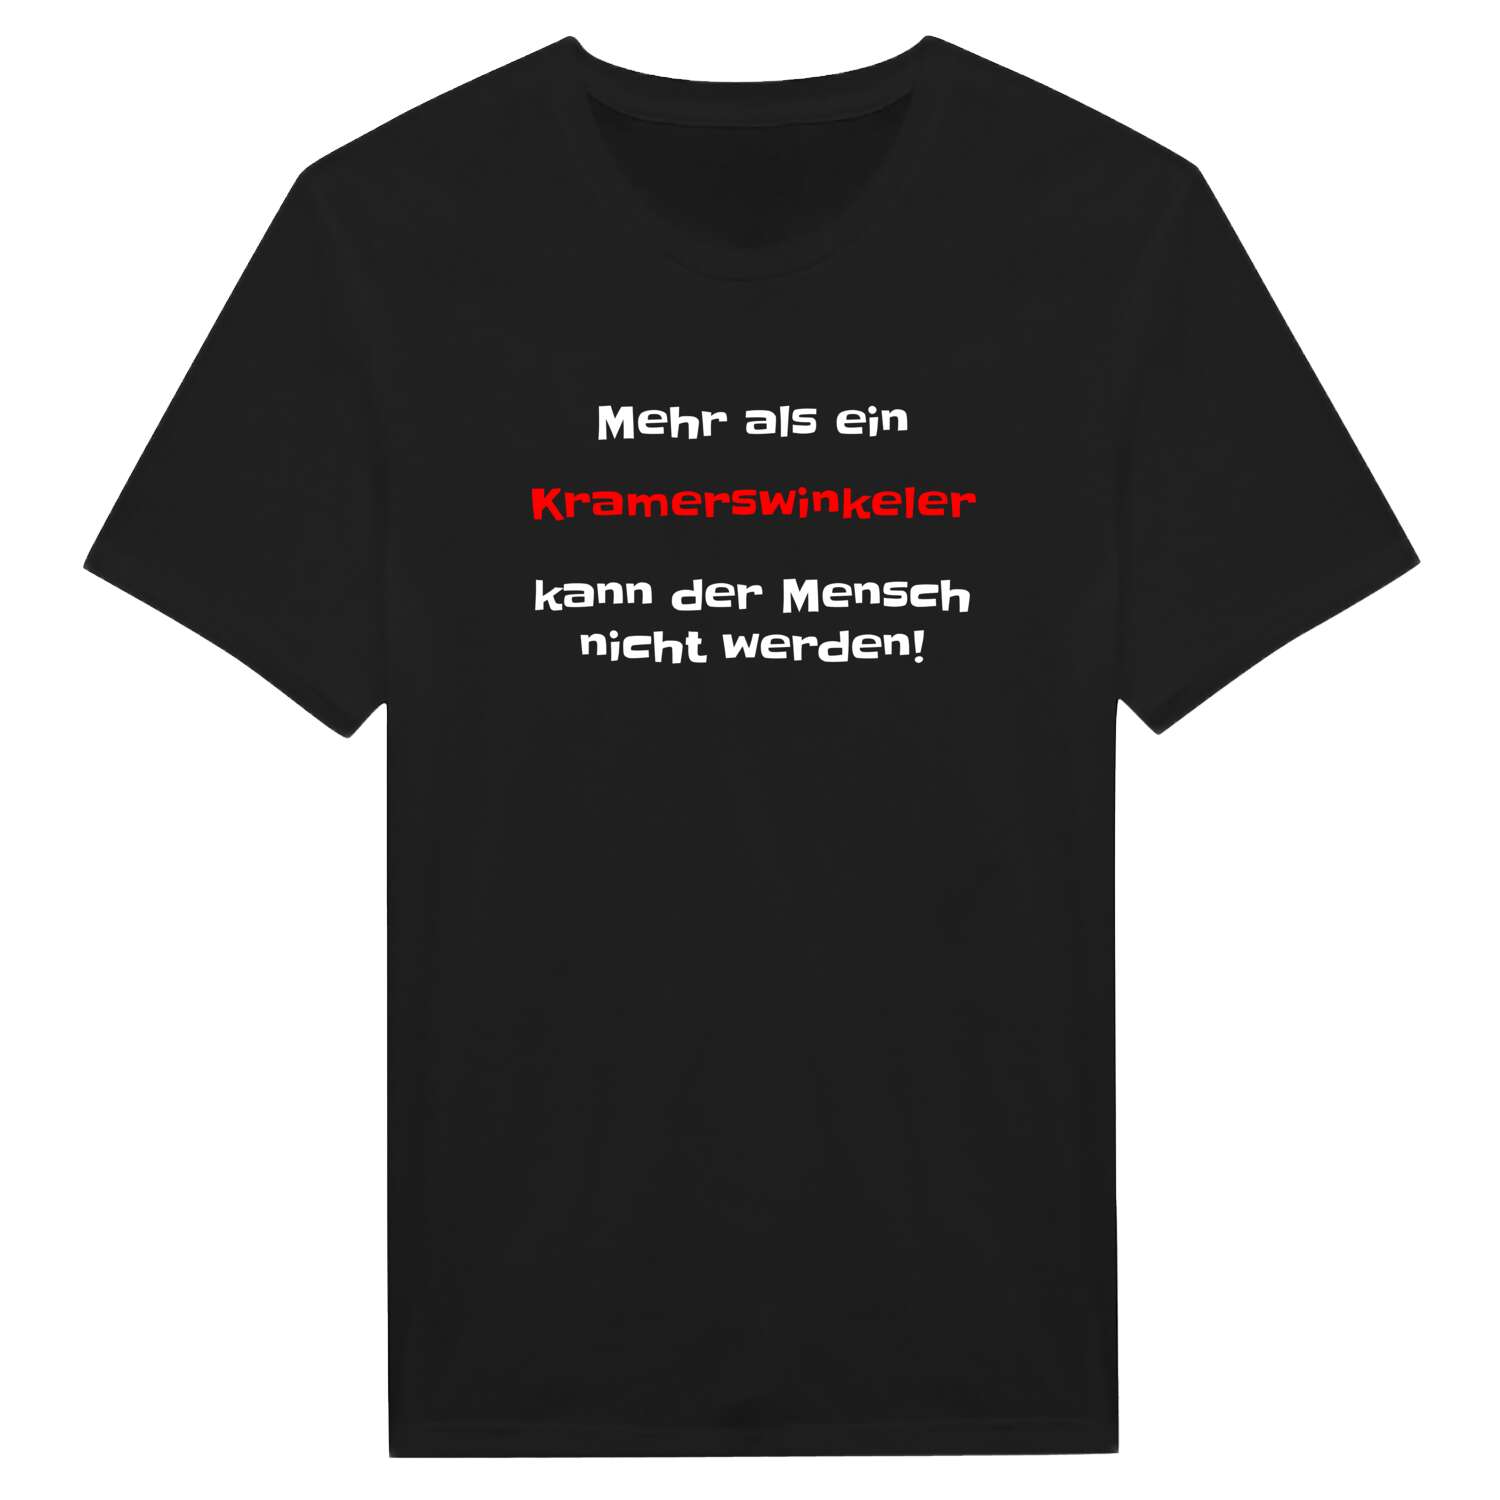 Kramerswinkel T-Shirt »Mehr als ein«